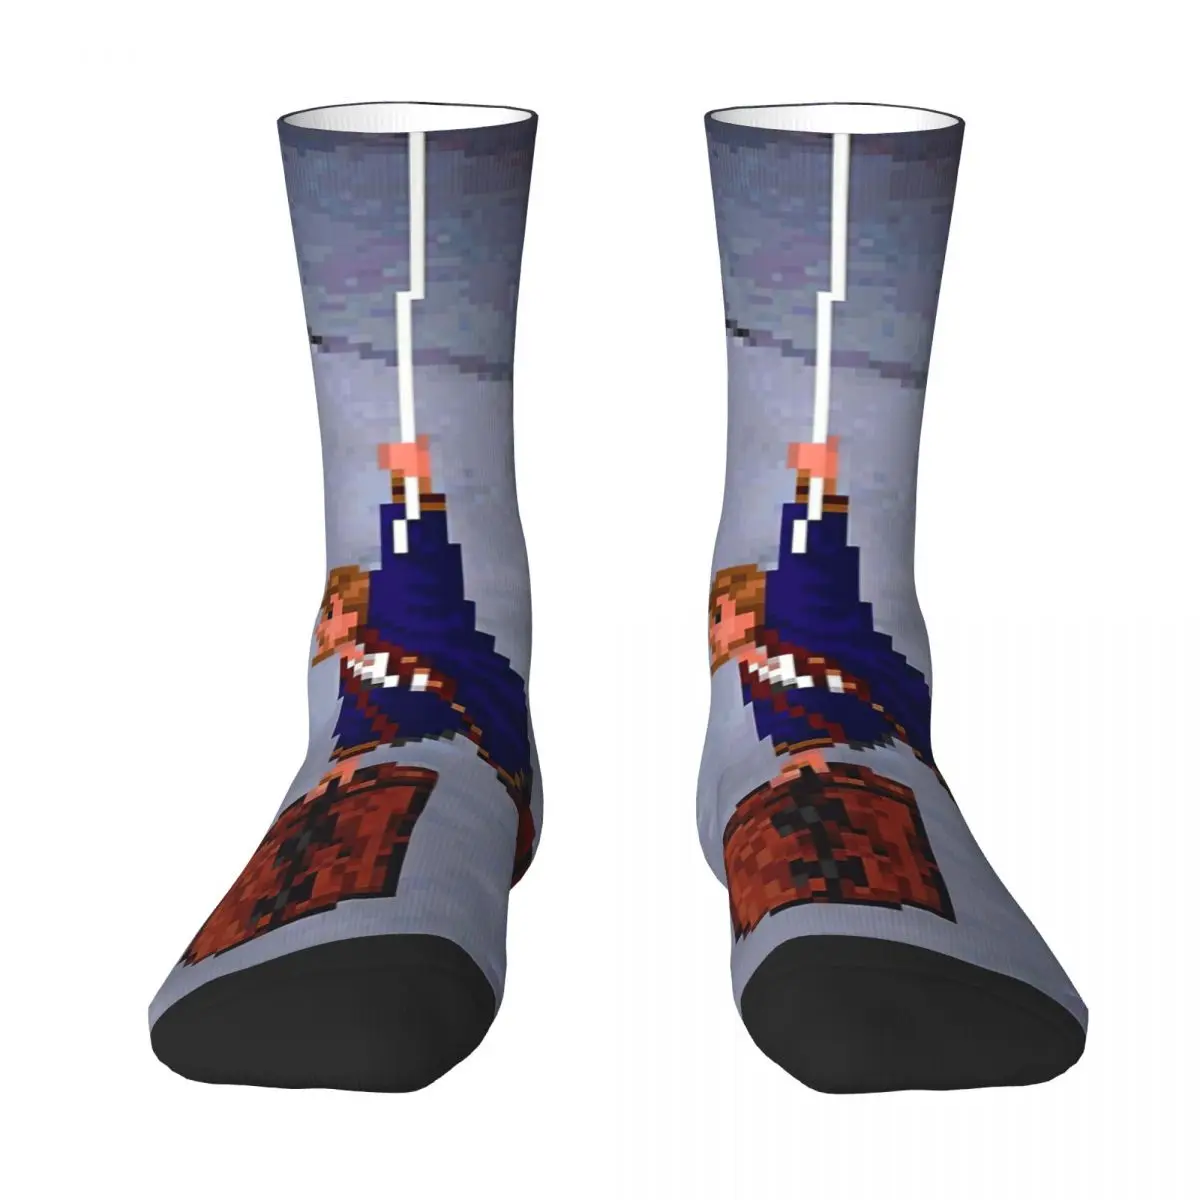 Monkey Island Adult Socks Unisex socks,men Socks women Socks